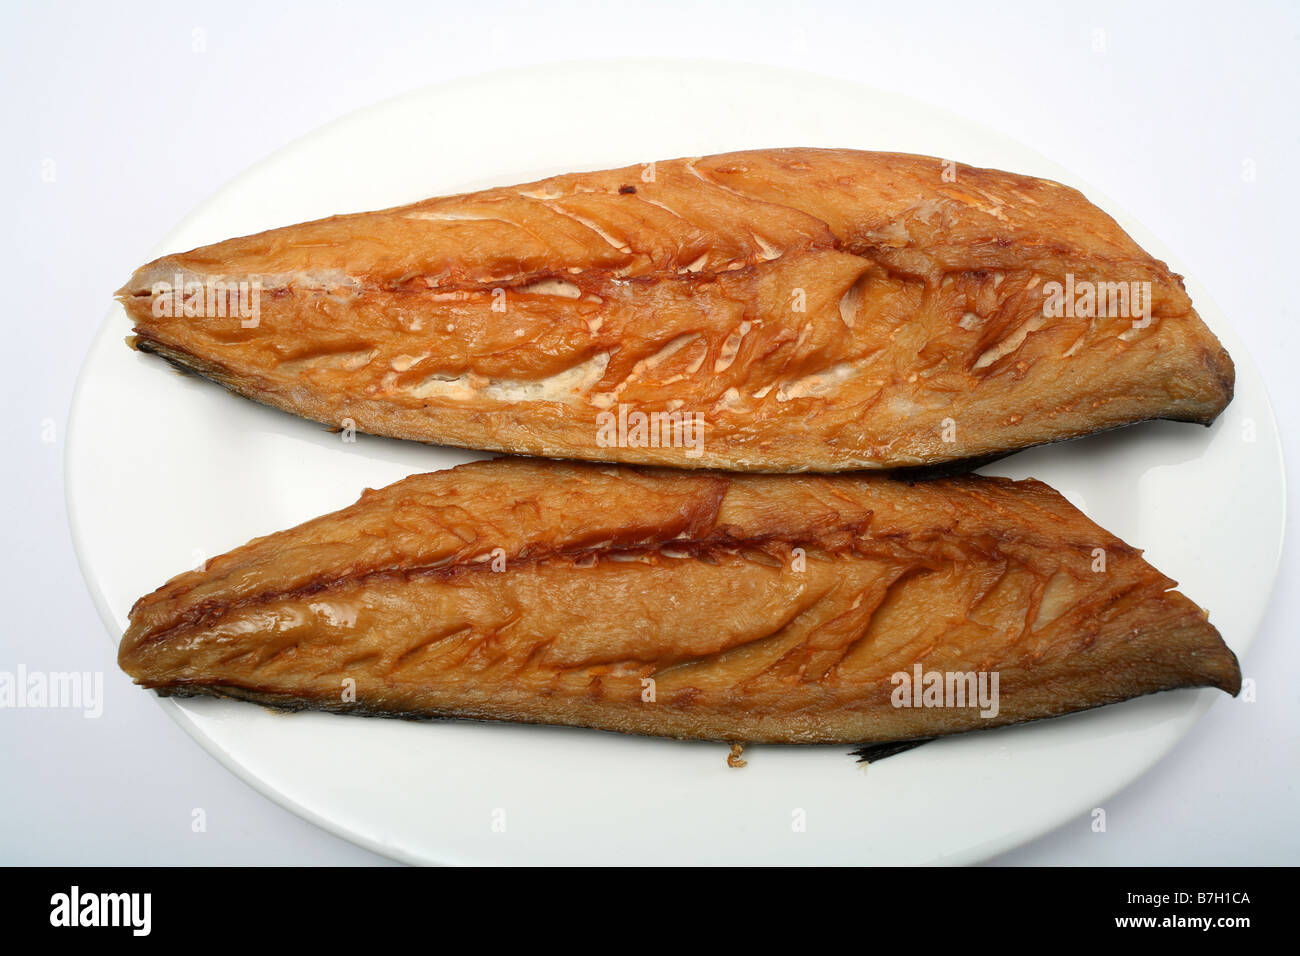 Zwei geräucherte Makrelen Filets auf einem Teller mit weißem Hintergrund Stockfoto